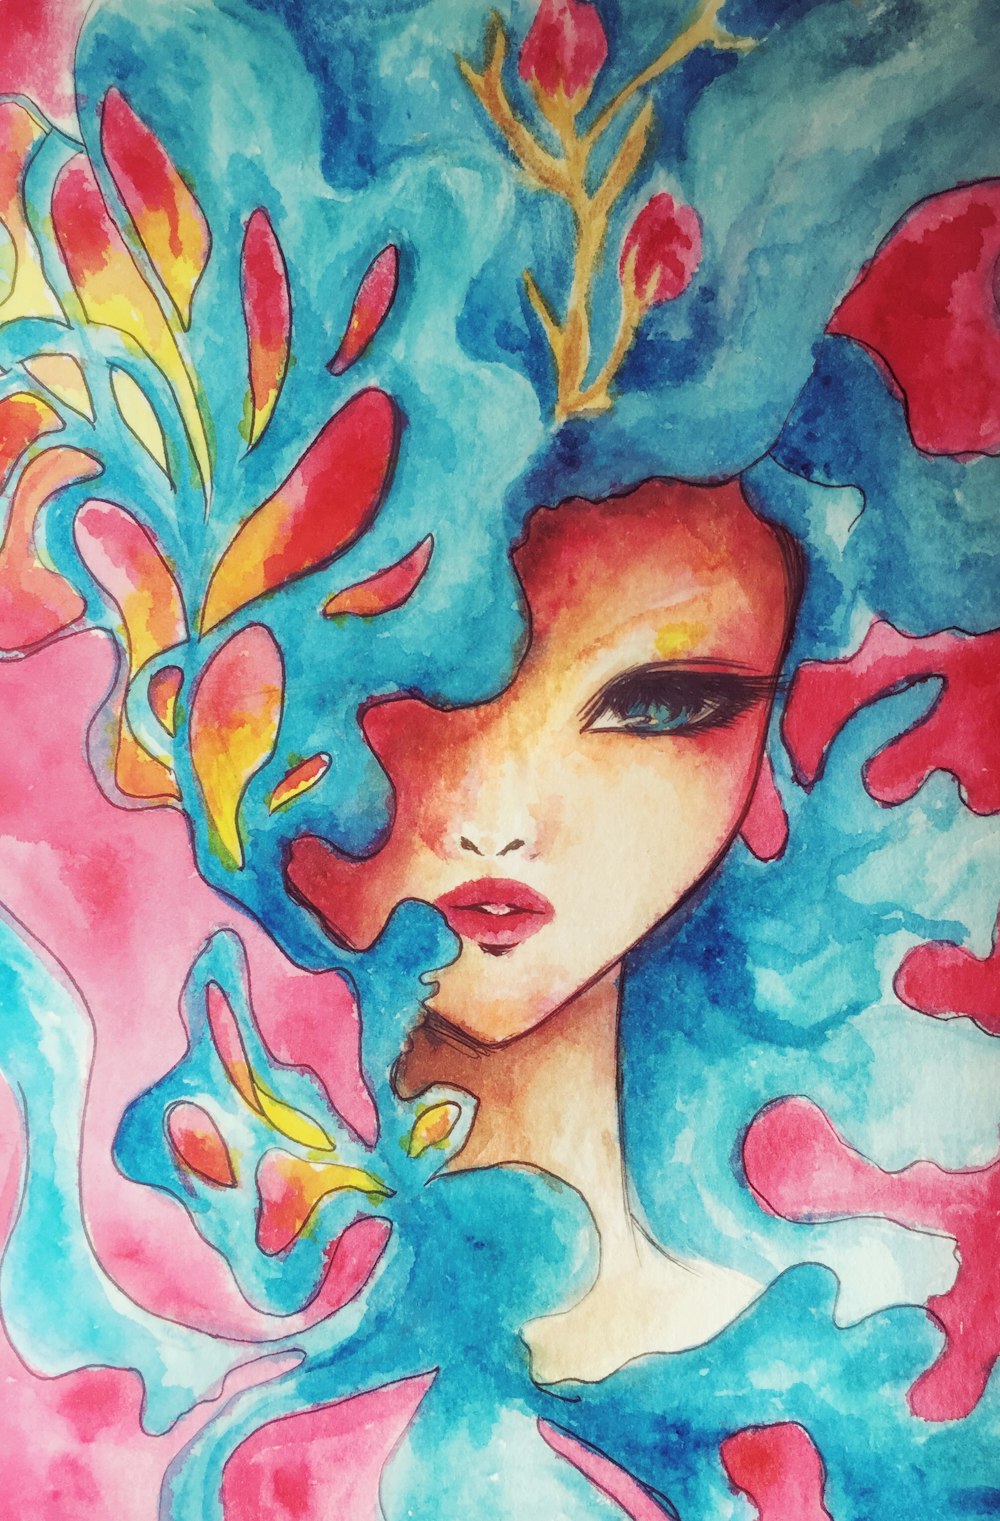 mujer con pintura de pelo azul y rojo